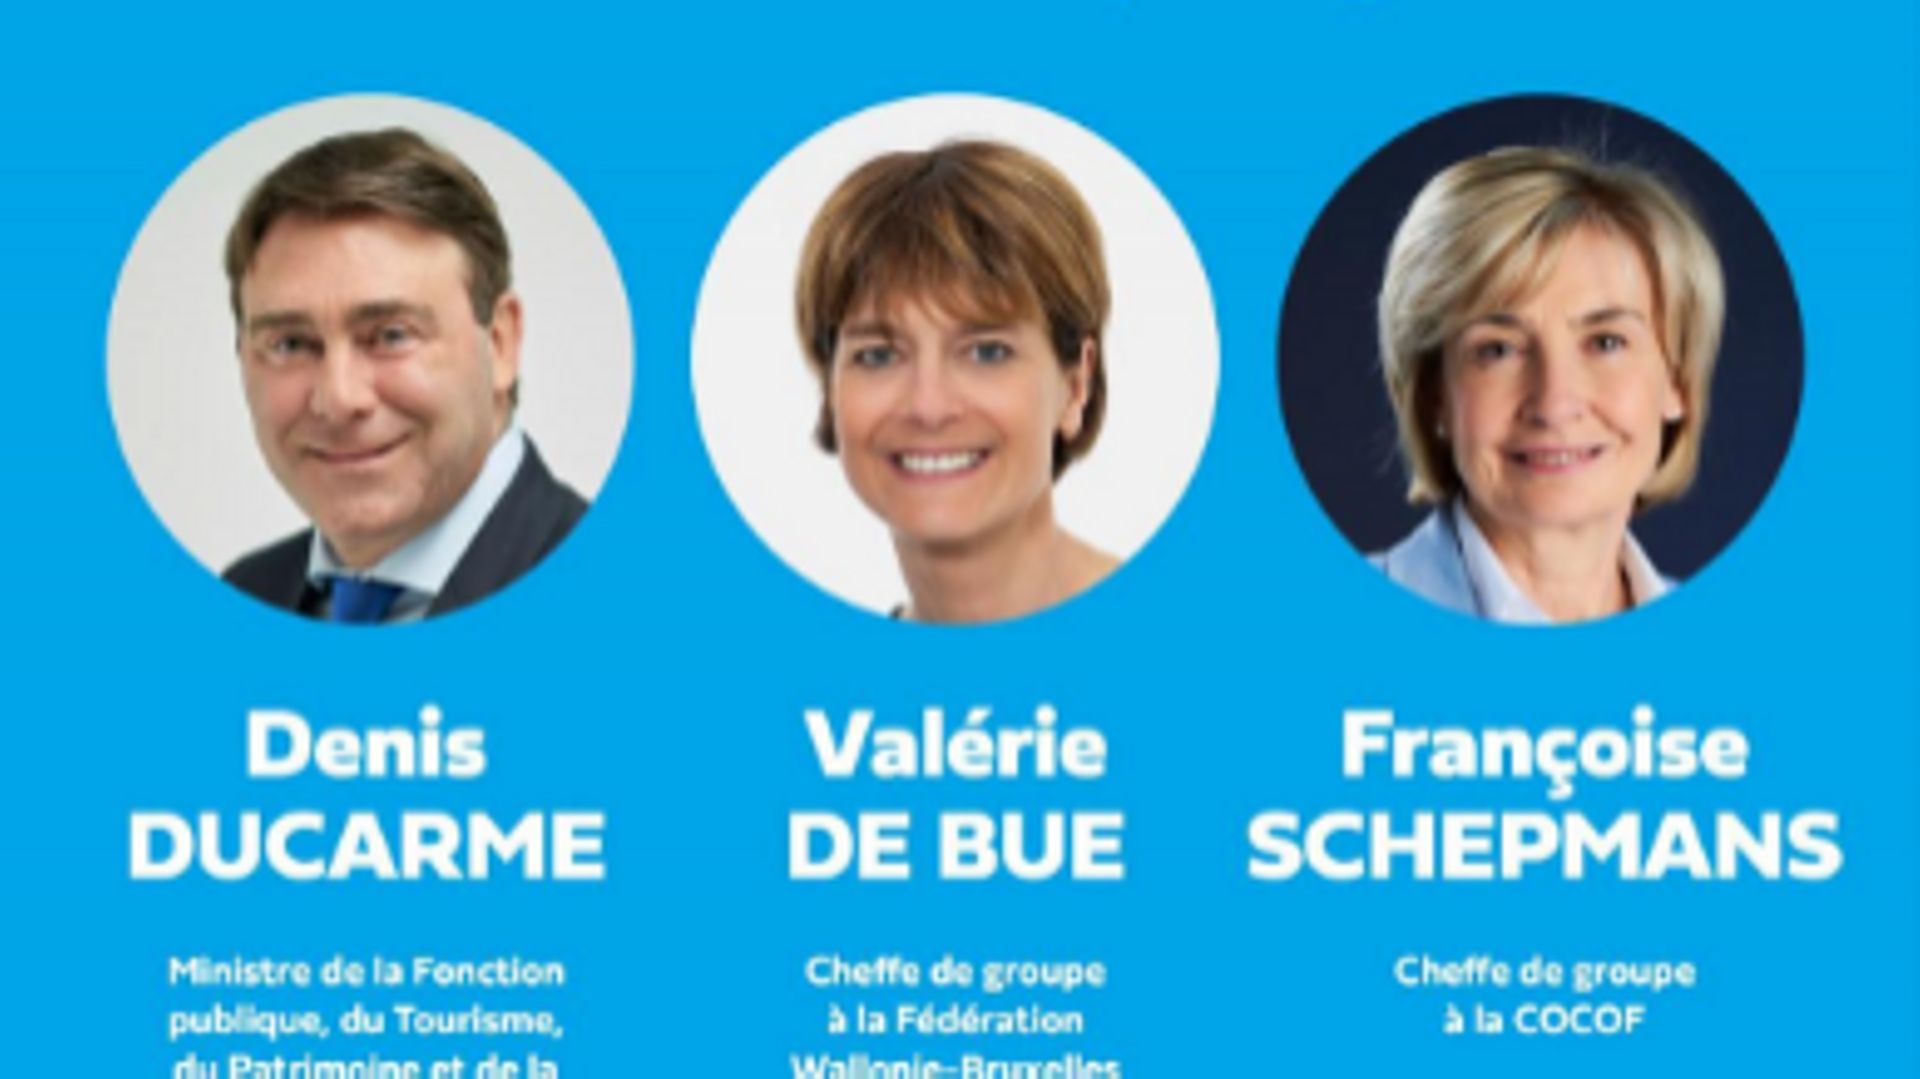 MR: Denis Ducarme remplace Valérie De Bue au gouvernement wallon, une décision illégale, selon le décret !